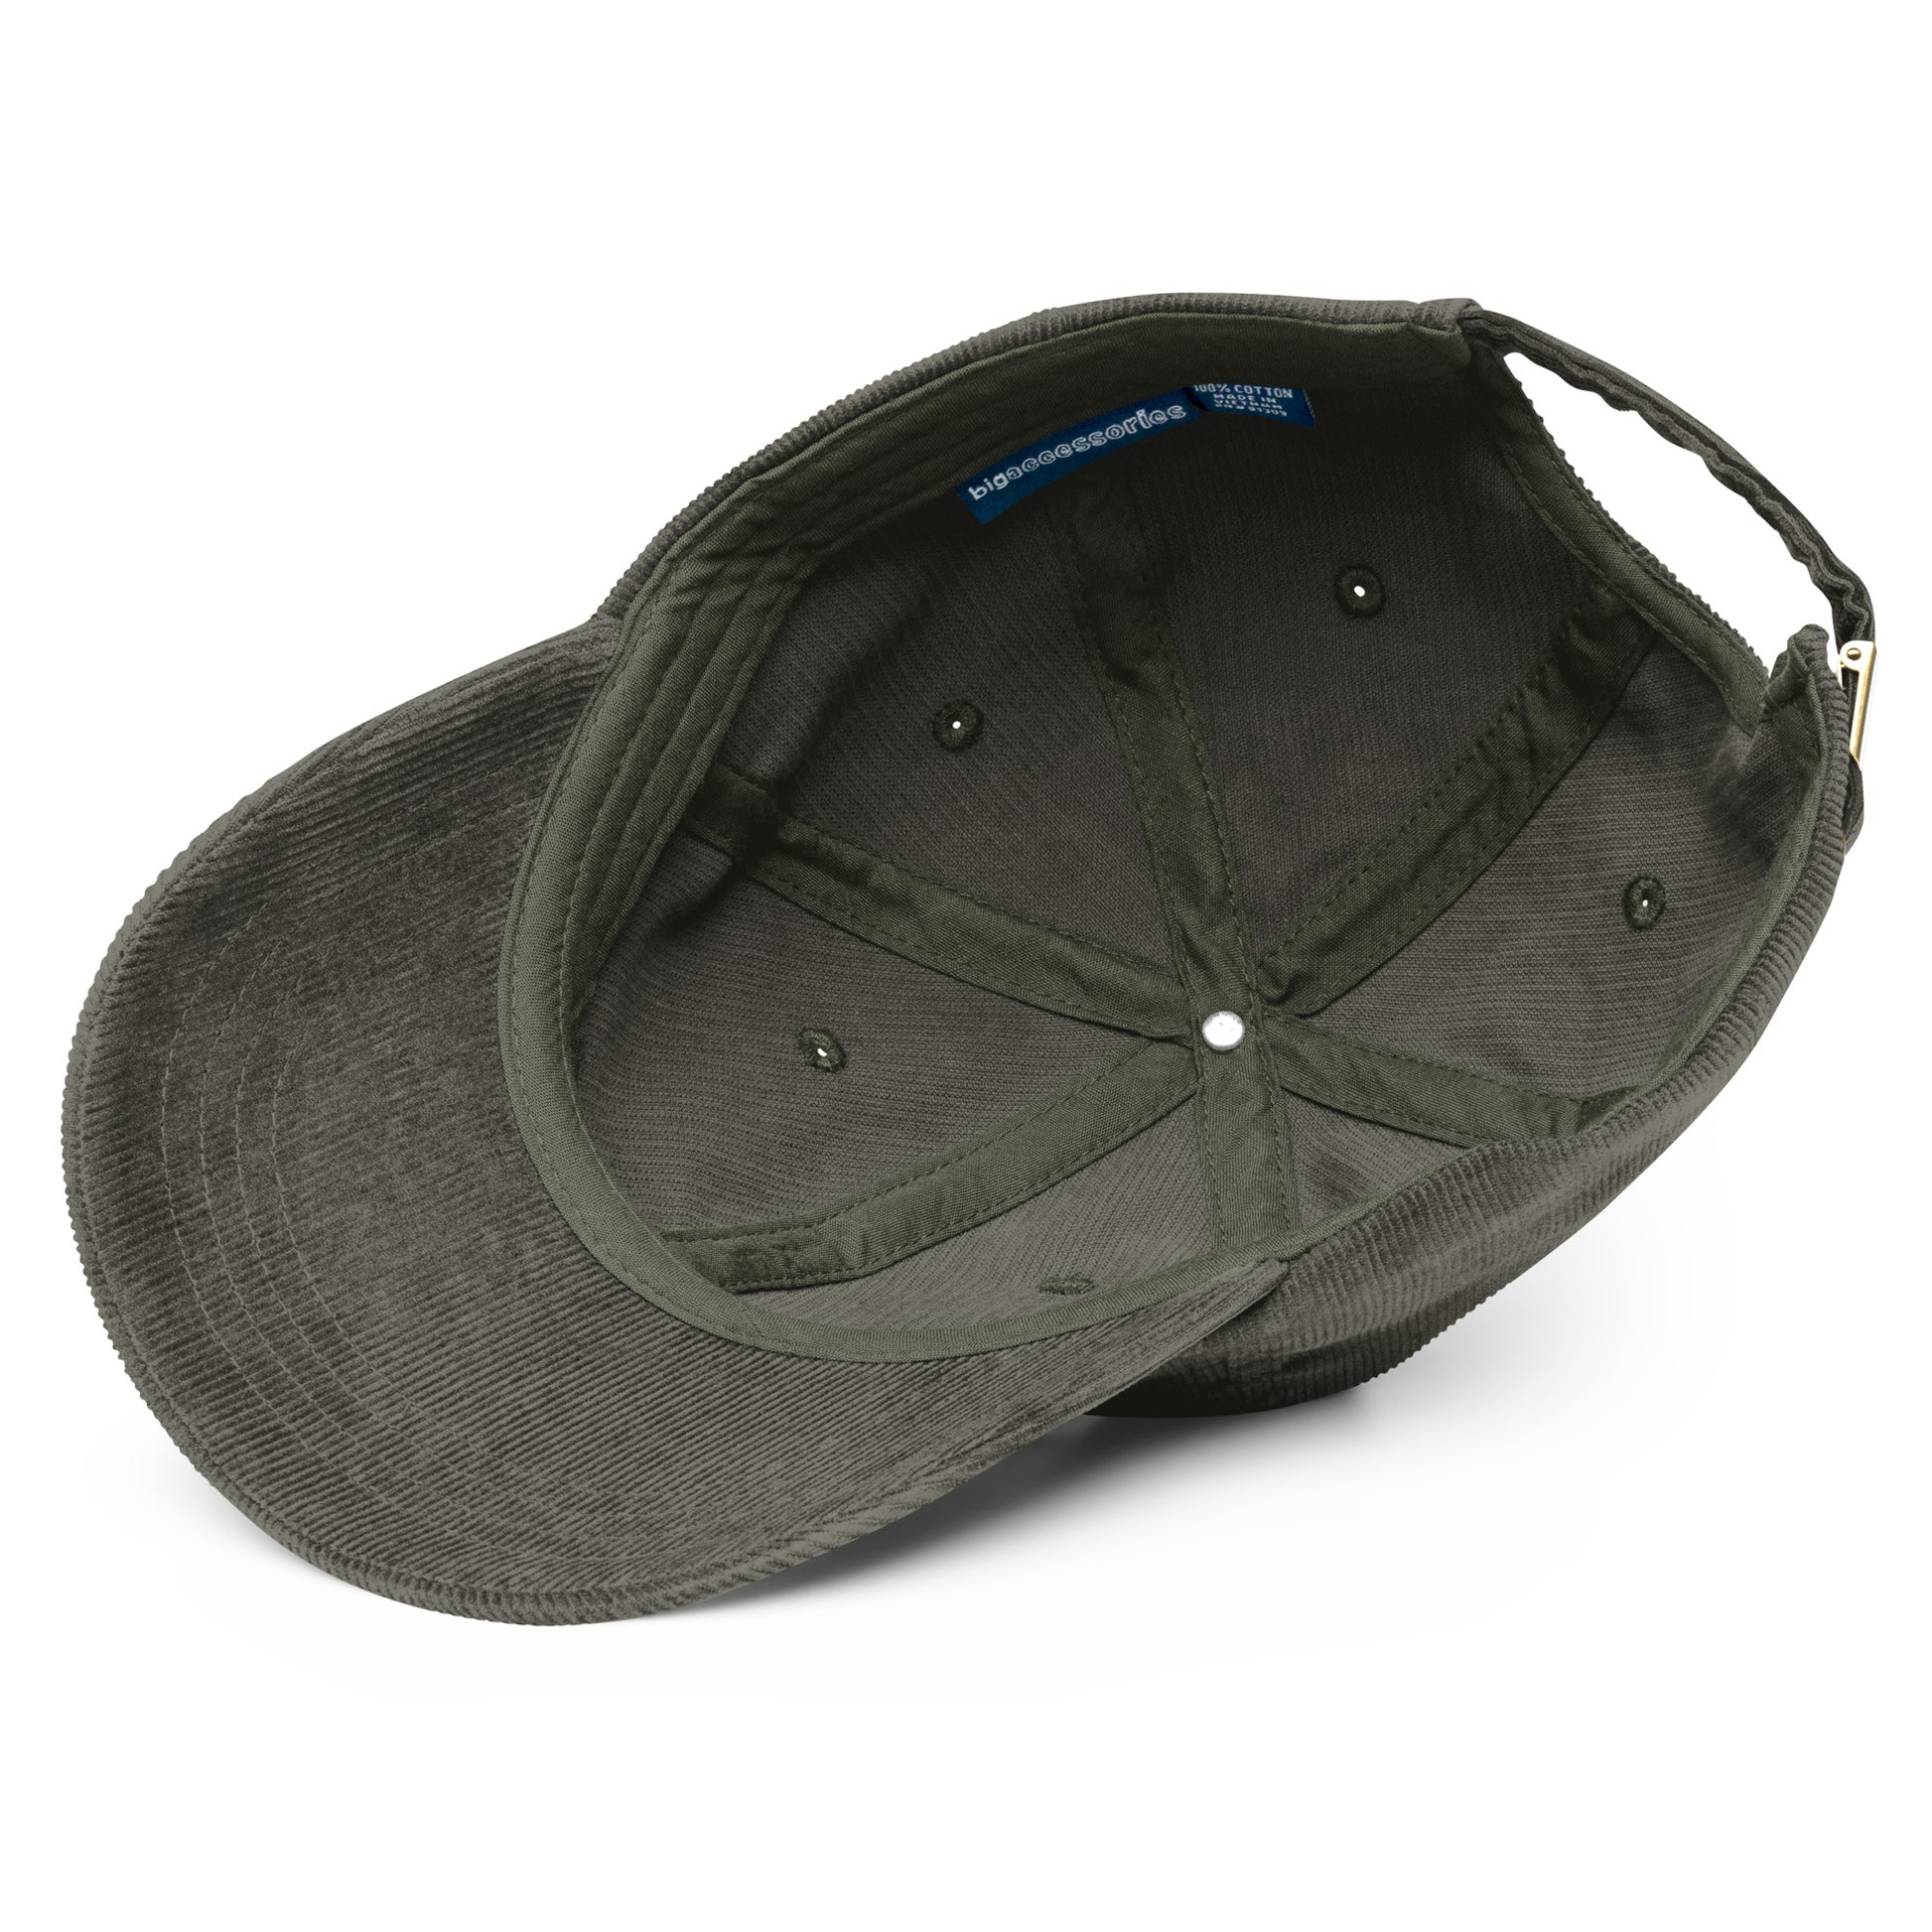 Take a Hike Vintage Corduroy Hat